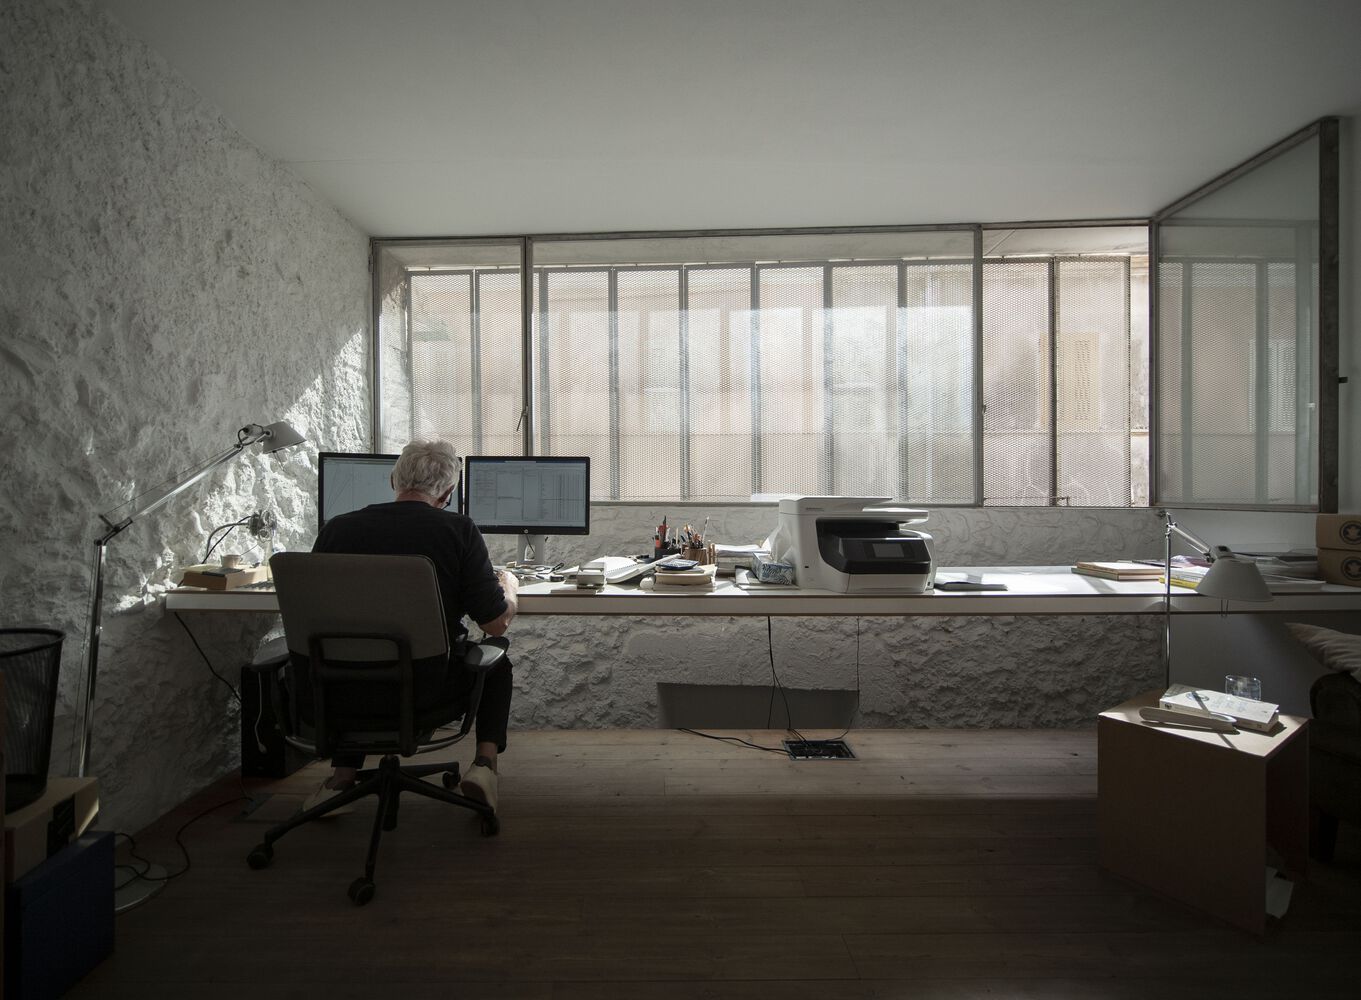 辦公室設計,設計公司辦公室案例,辦公室設計案例,辦公室設計方案,Sagristà-Simó,設計公司辦公室,建築事務所辦公室,西班牙